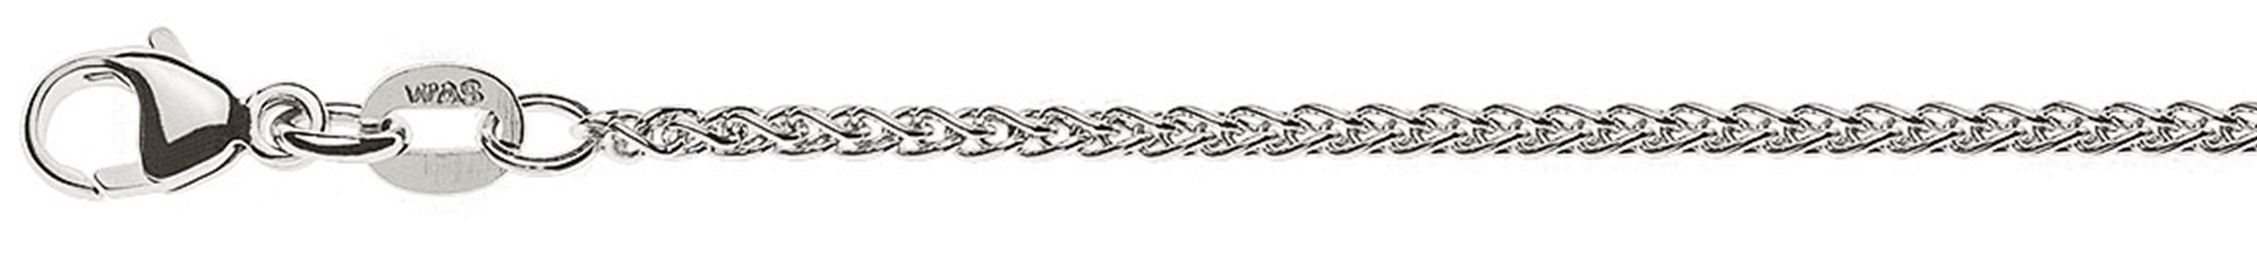 AURONOS Prestige Necklace white gold 18K cable chain 40cm 1.65mm